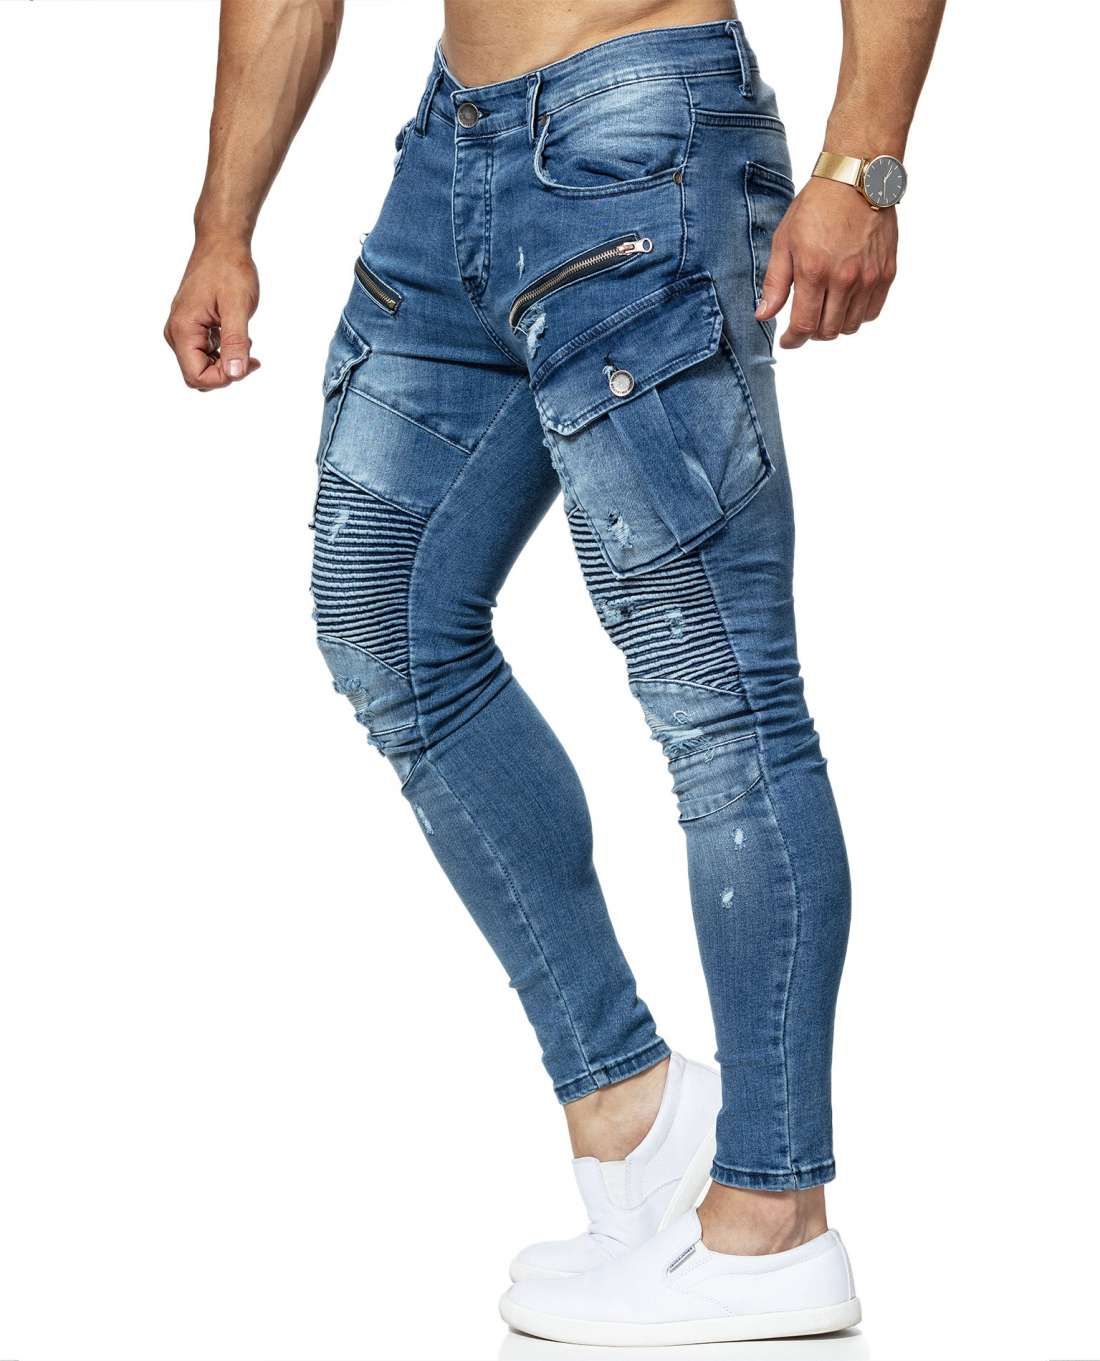 Clipsaz Jeans Blue Jerone